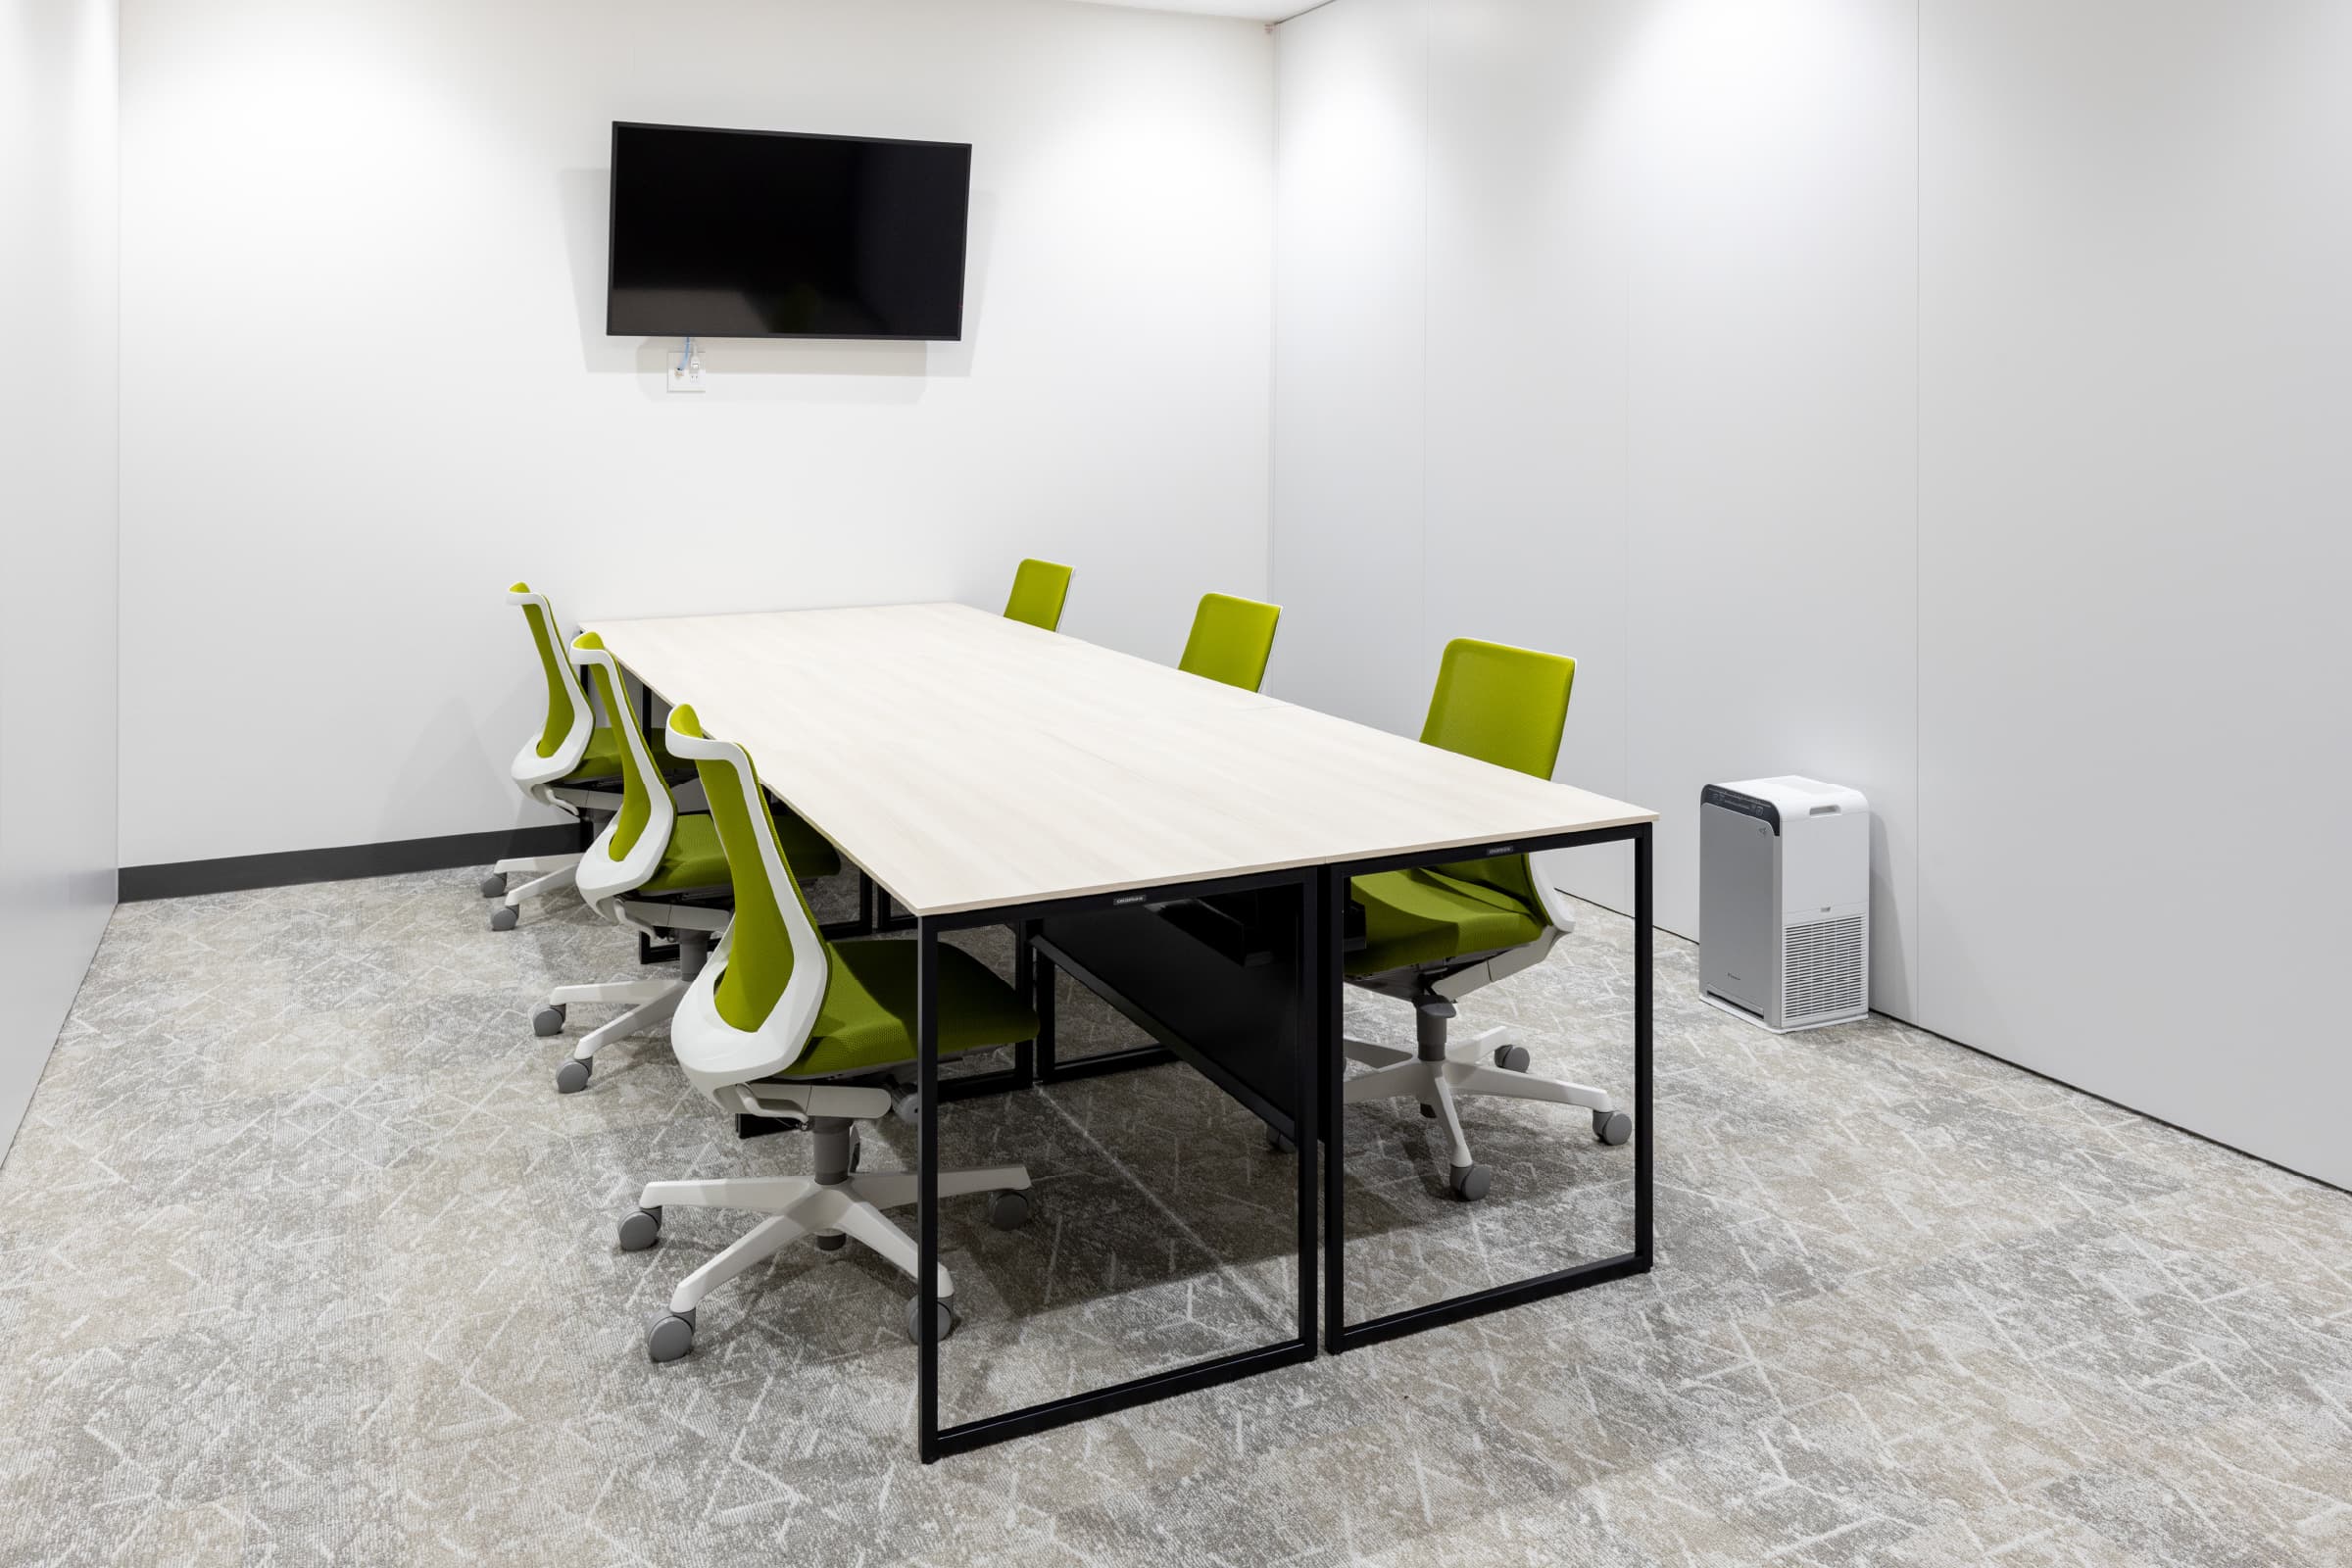 シェアオフィス／14居室あるシェアオフィスは、居室毎に椅子や内装を変え、オリジナリティーを演出。薄い天板と細いフレーム脚によるシンプルなデザインで、下肢空間を広く利用できるデスク。　